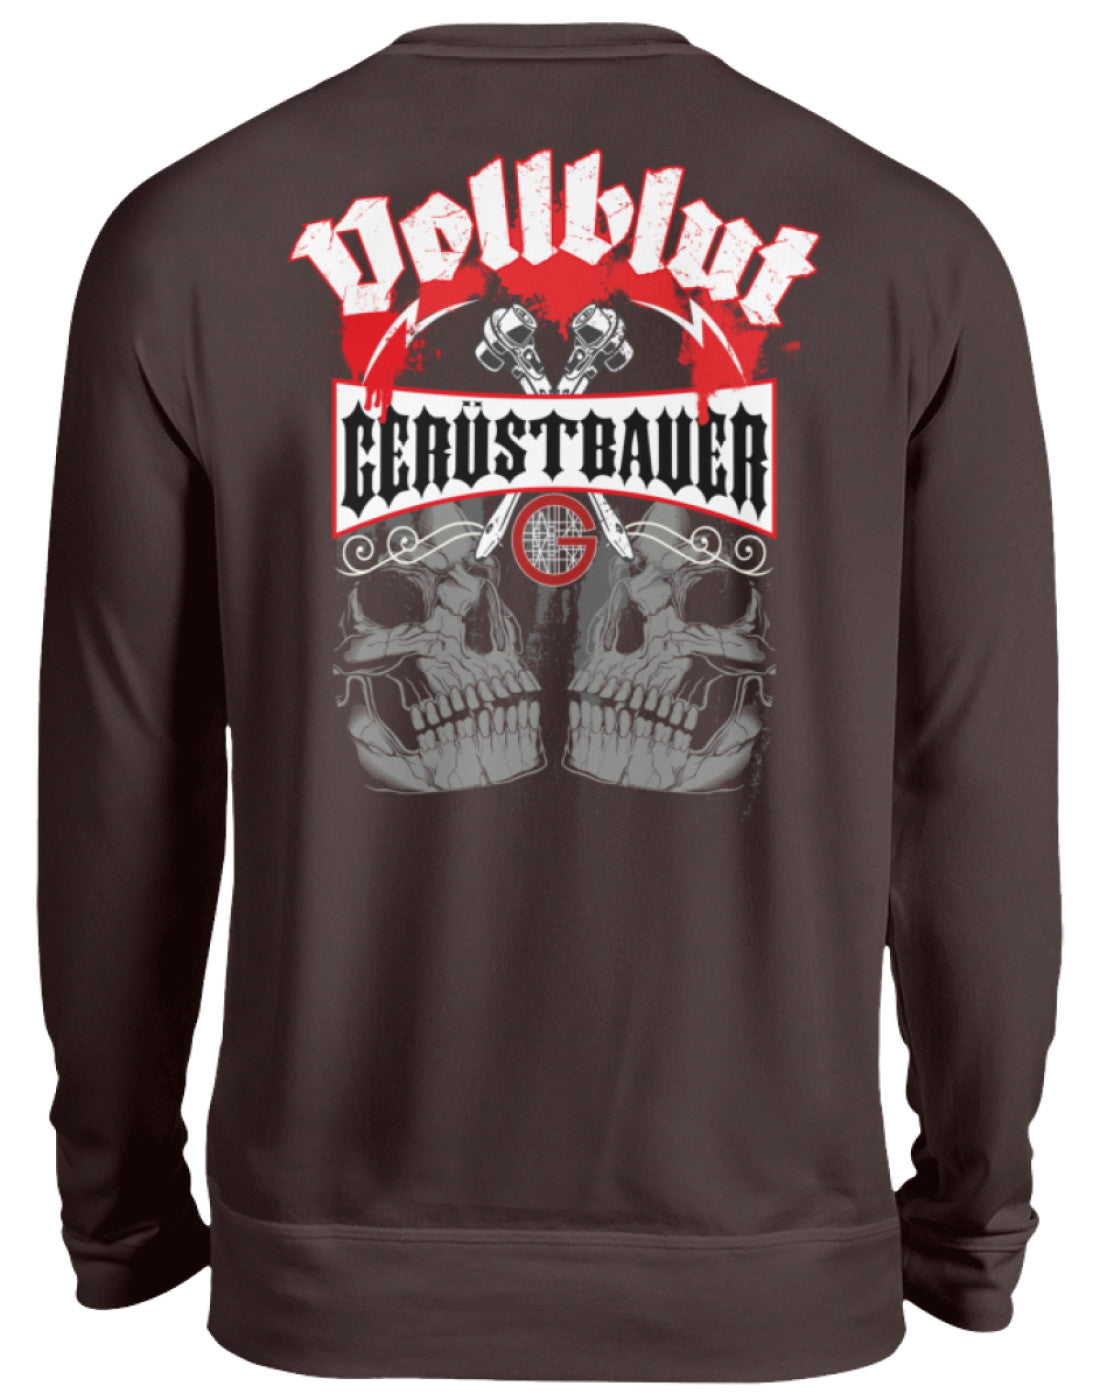 Vollblut Gerüstbauer  - Unisex Pullover €32.95 Gerüstbauer - Shop >>